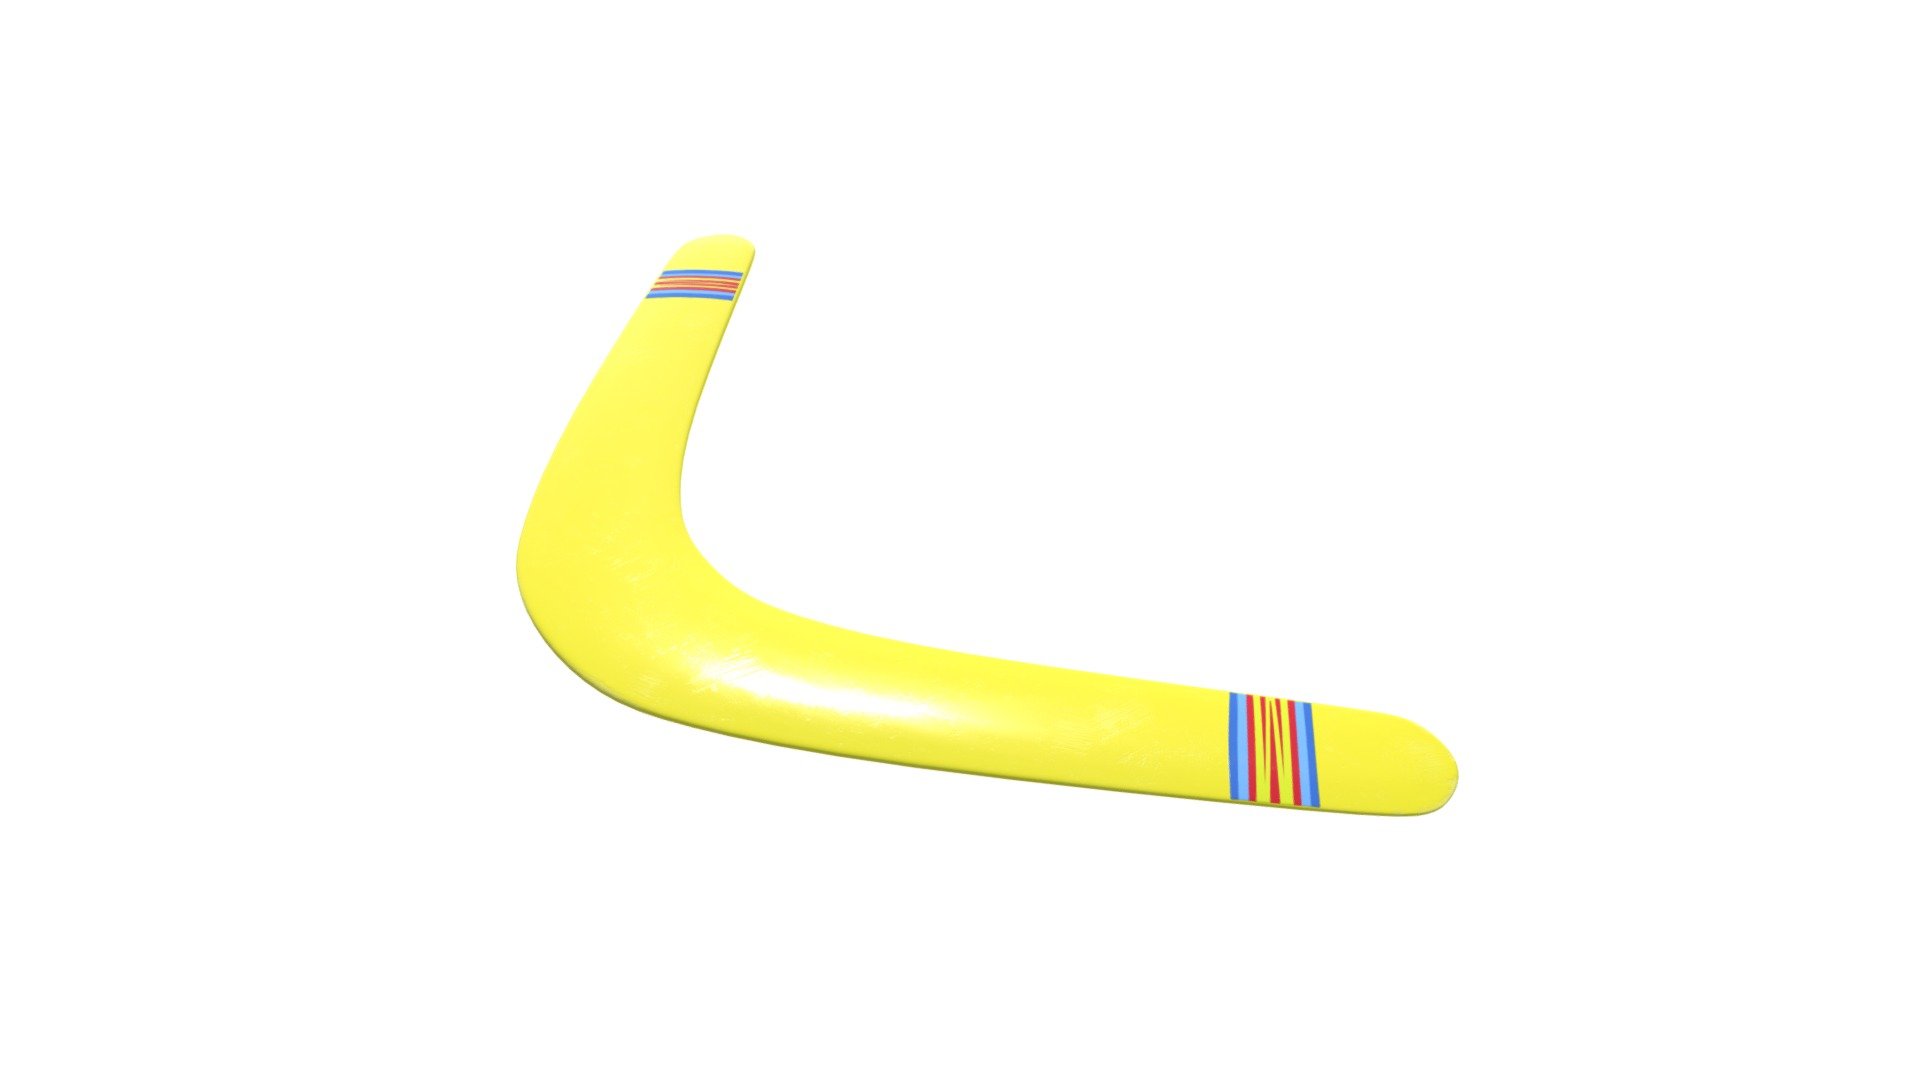 Boomerang (offline) - 3D model by YannickStoot 3d model